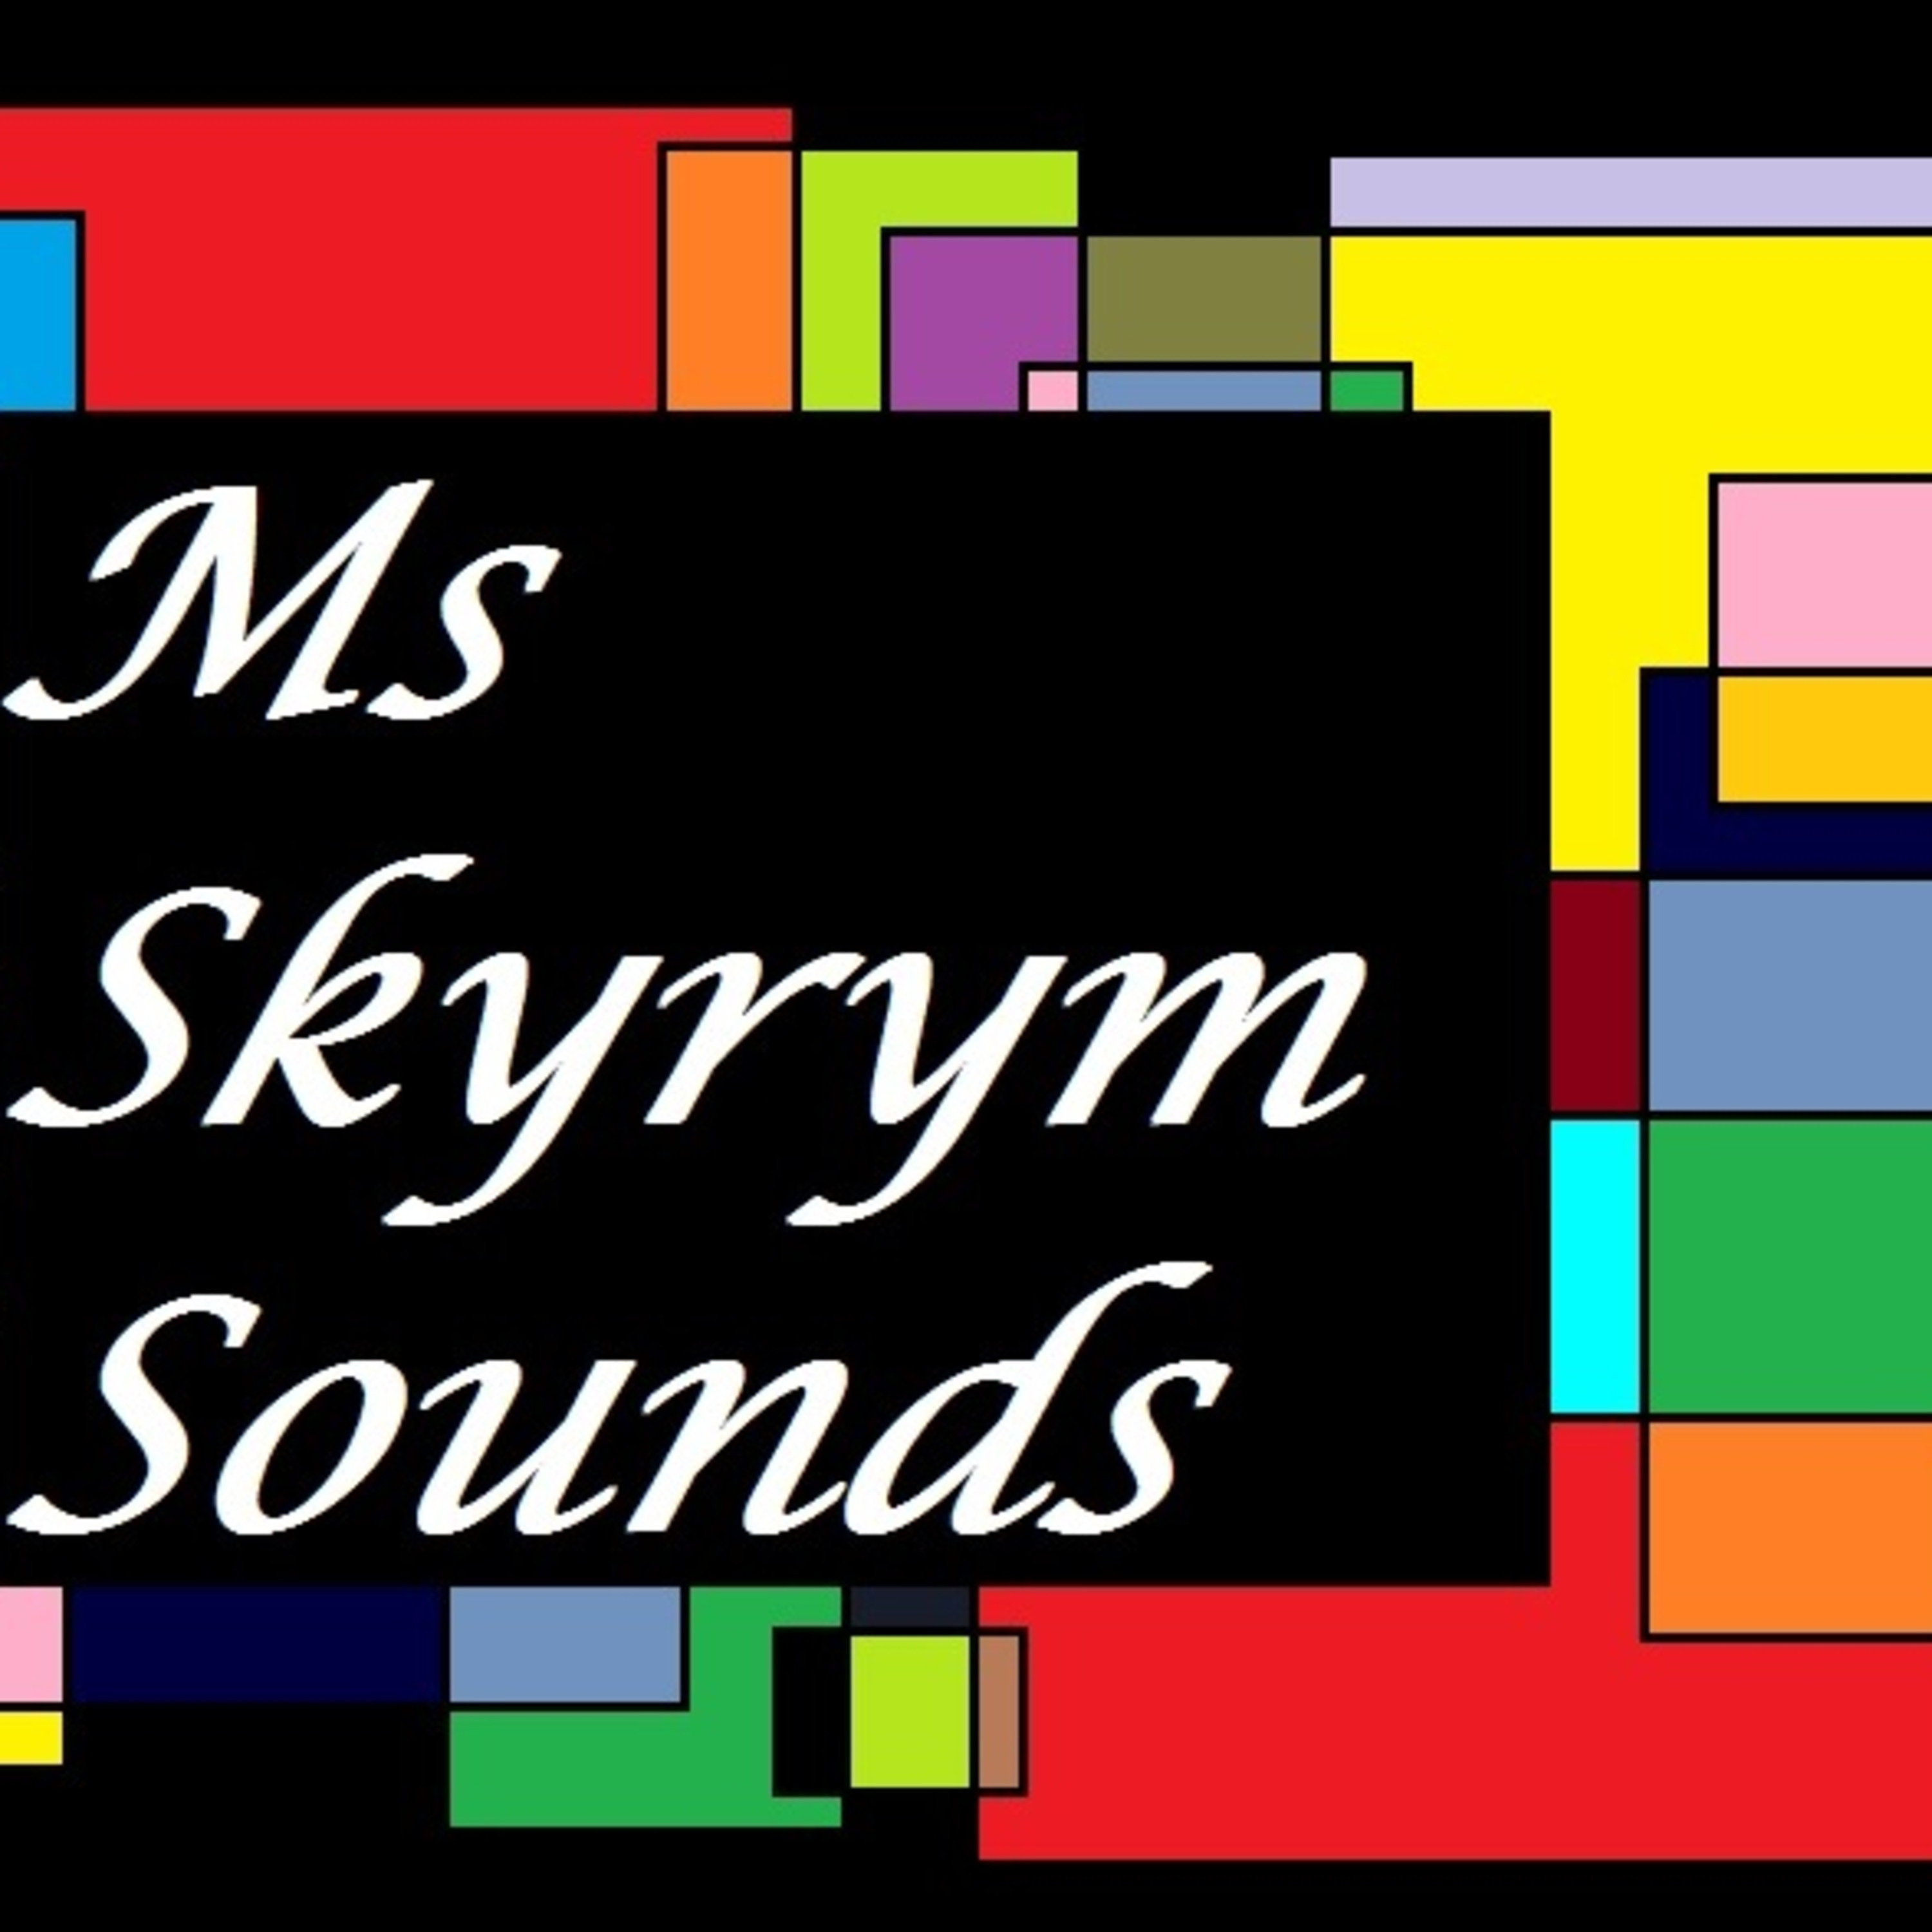 Ms Skyrym Sounds